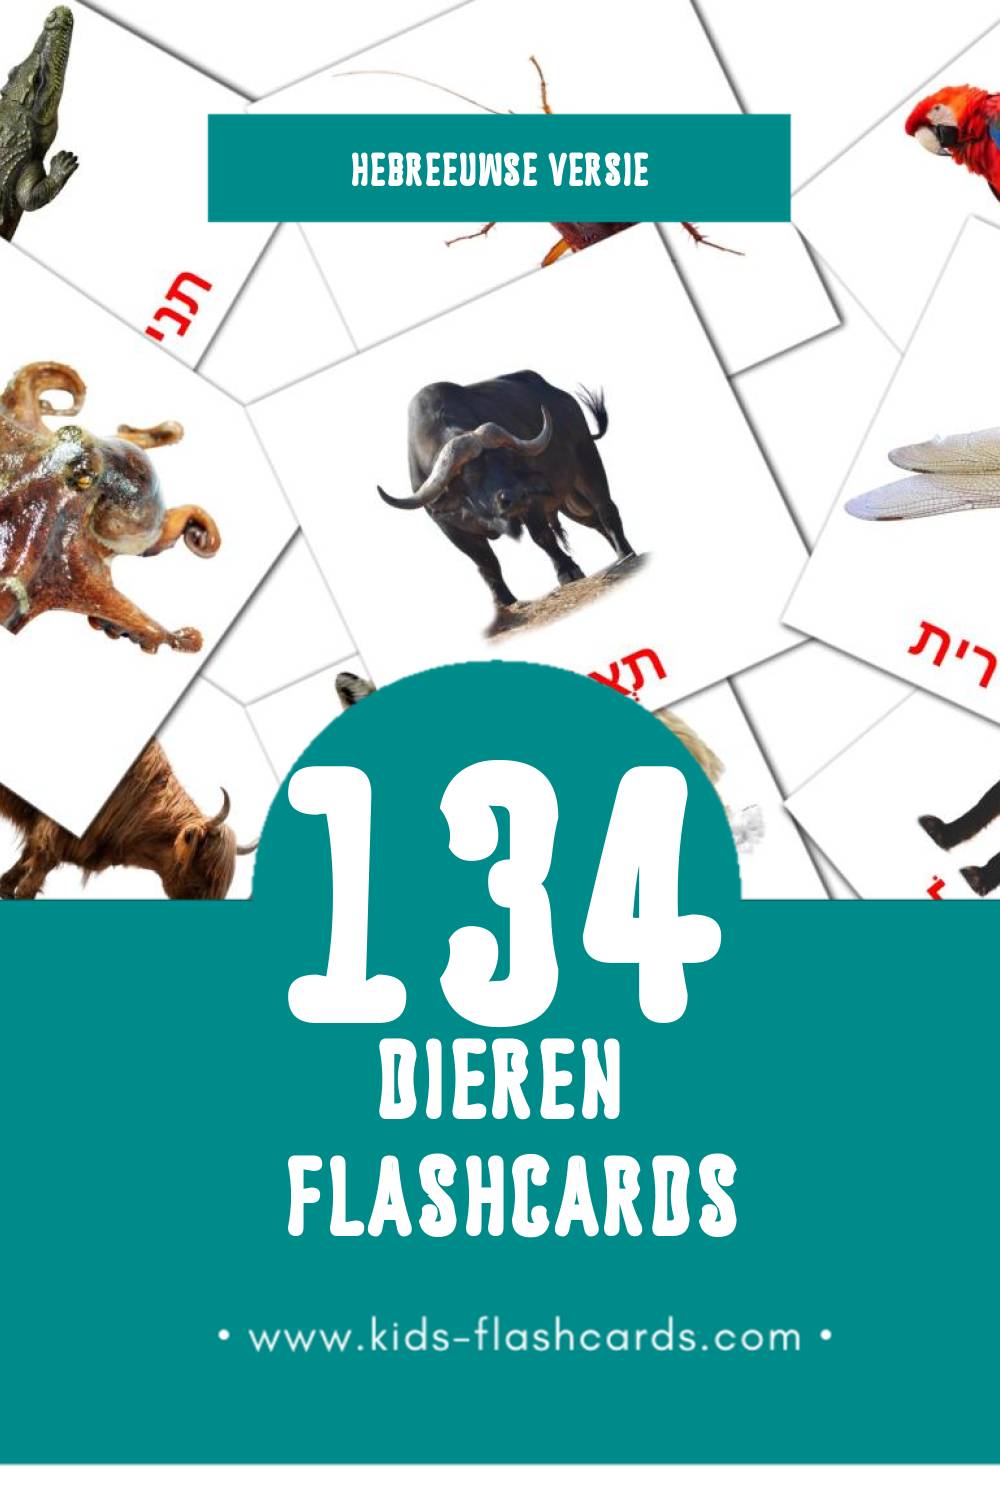 Visuele חיות Flashcards voor Kleuters (134 kaarten in het Hebreeuws)